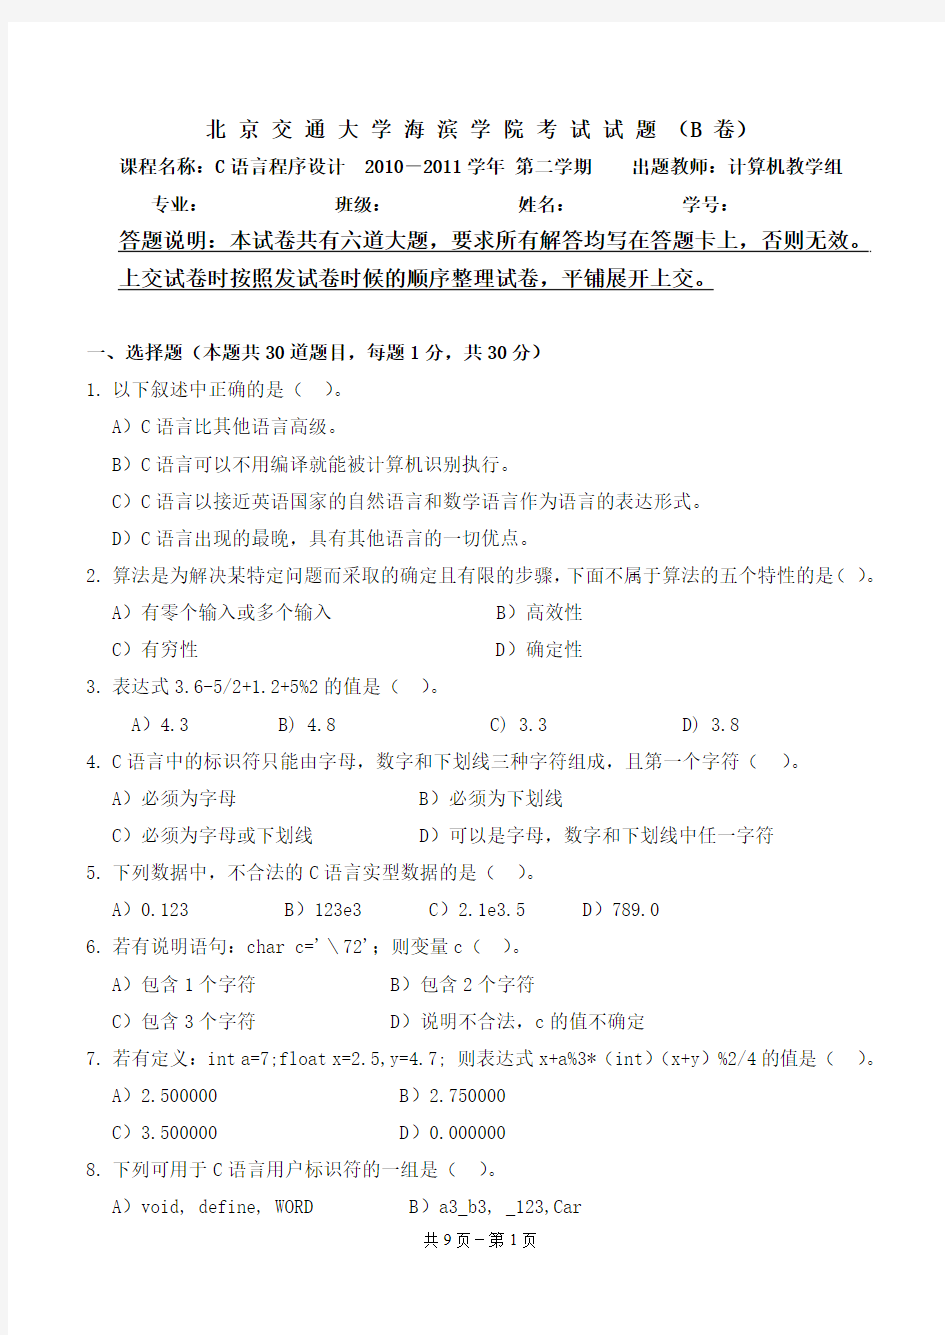 C语言程序设计 海滨学院期末考试试卷(2010-2011 第二学期)(B)